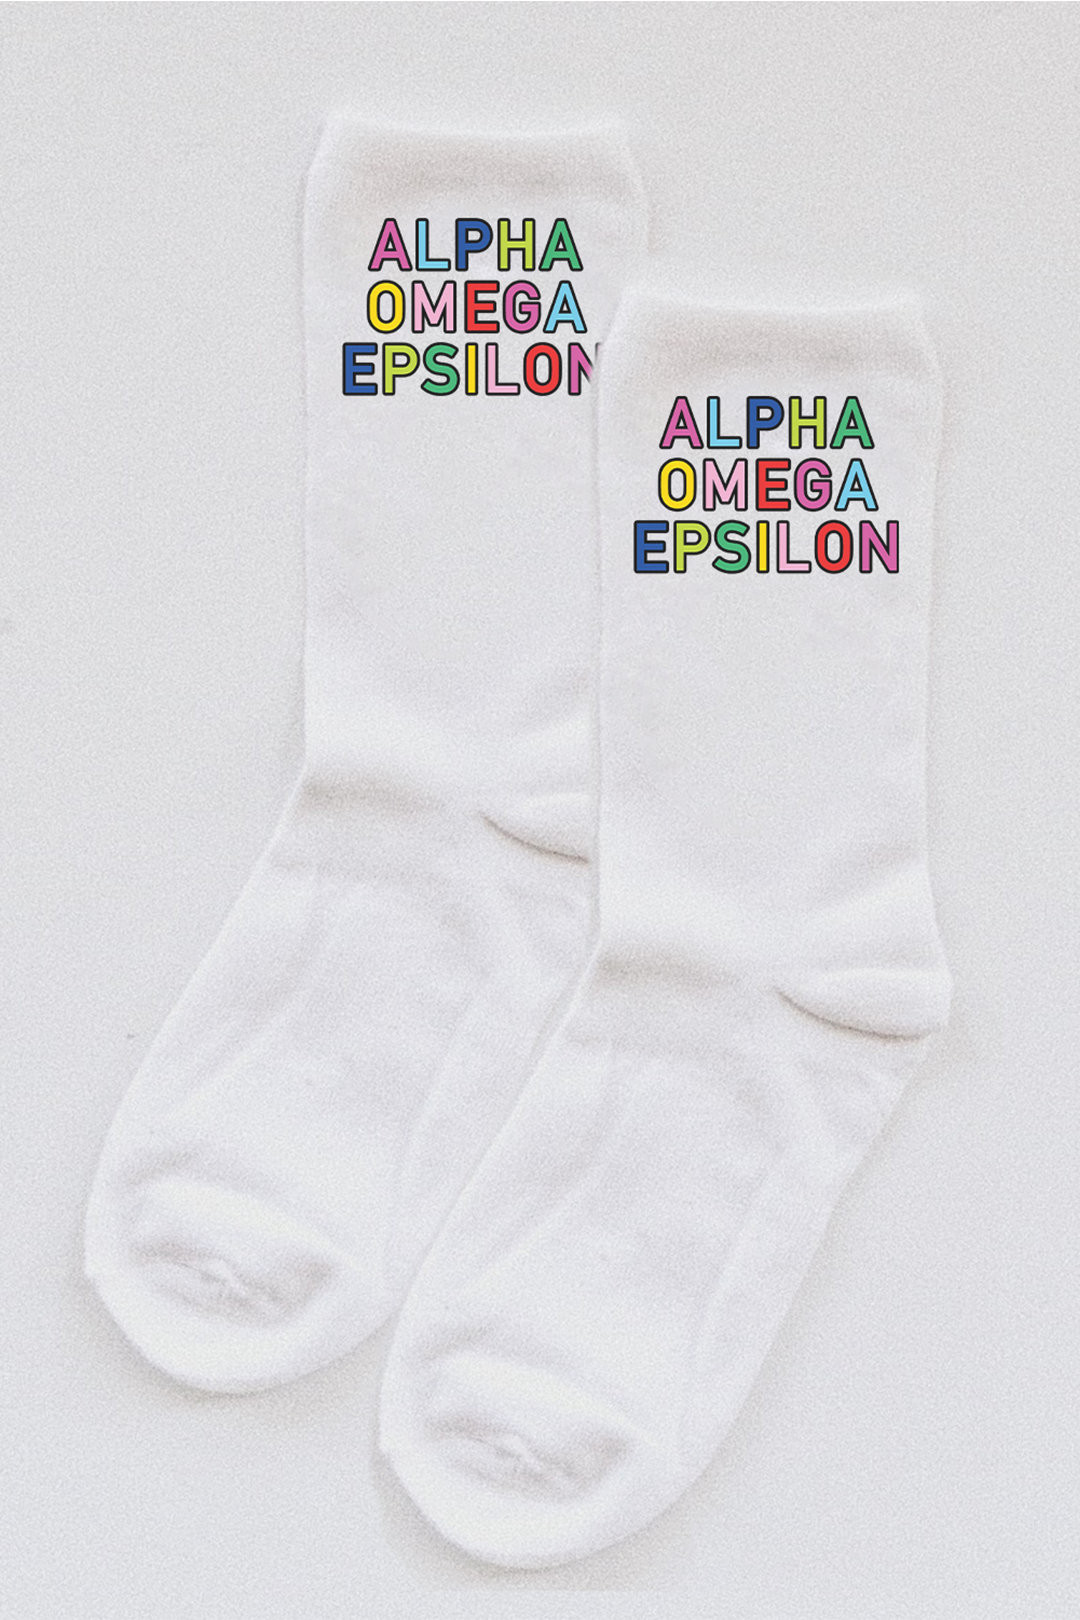 Colorful socks - Alpha Omega Epsilon